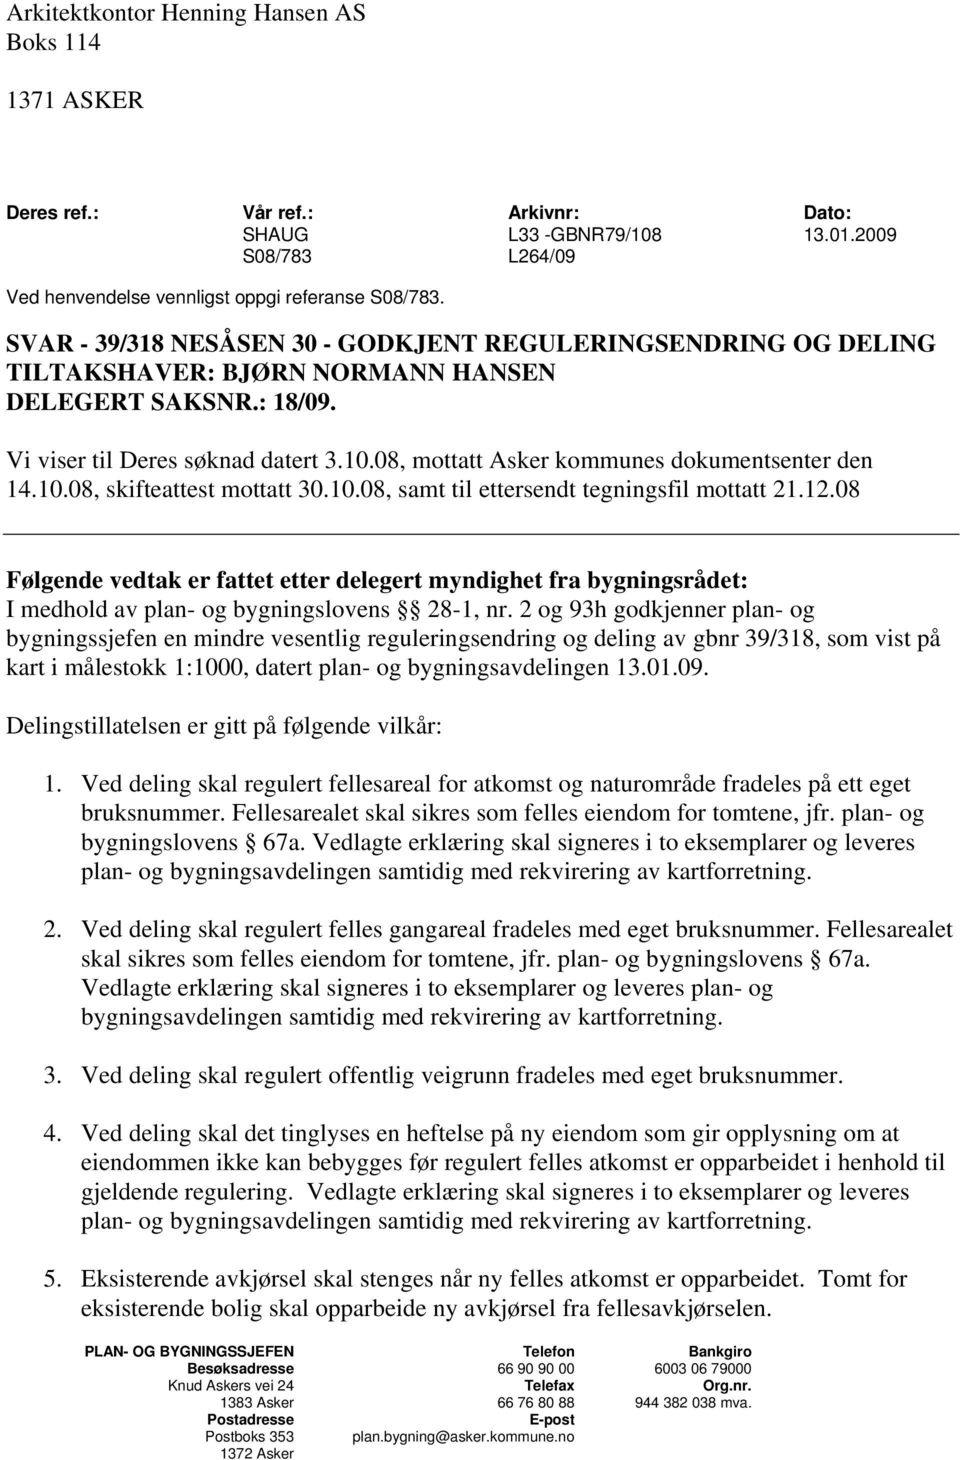 08, mottatt Asker kommunes dokumentsenter den 14.10.08, skifteattest mottatt 30.10.08, samt til ettersendt tegningsfil mottatt 21.12.